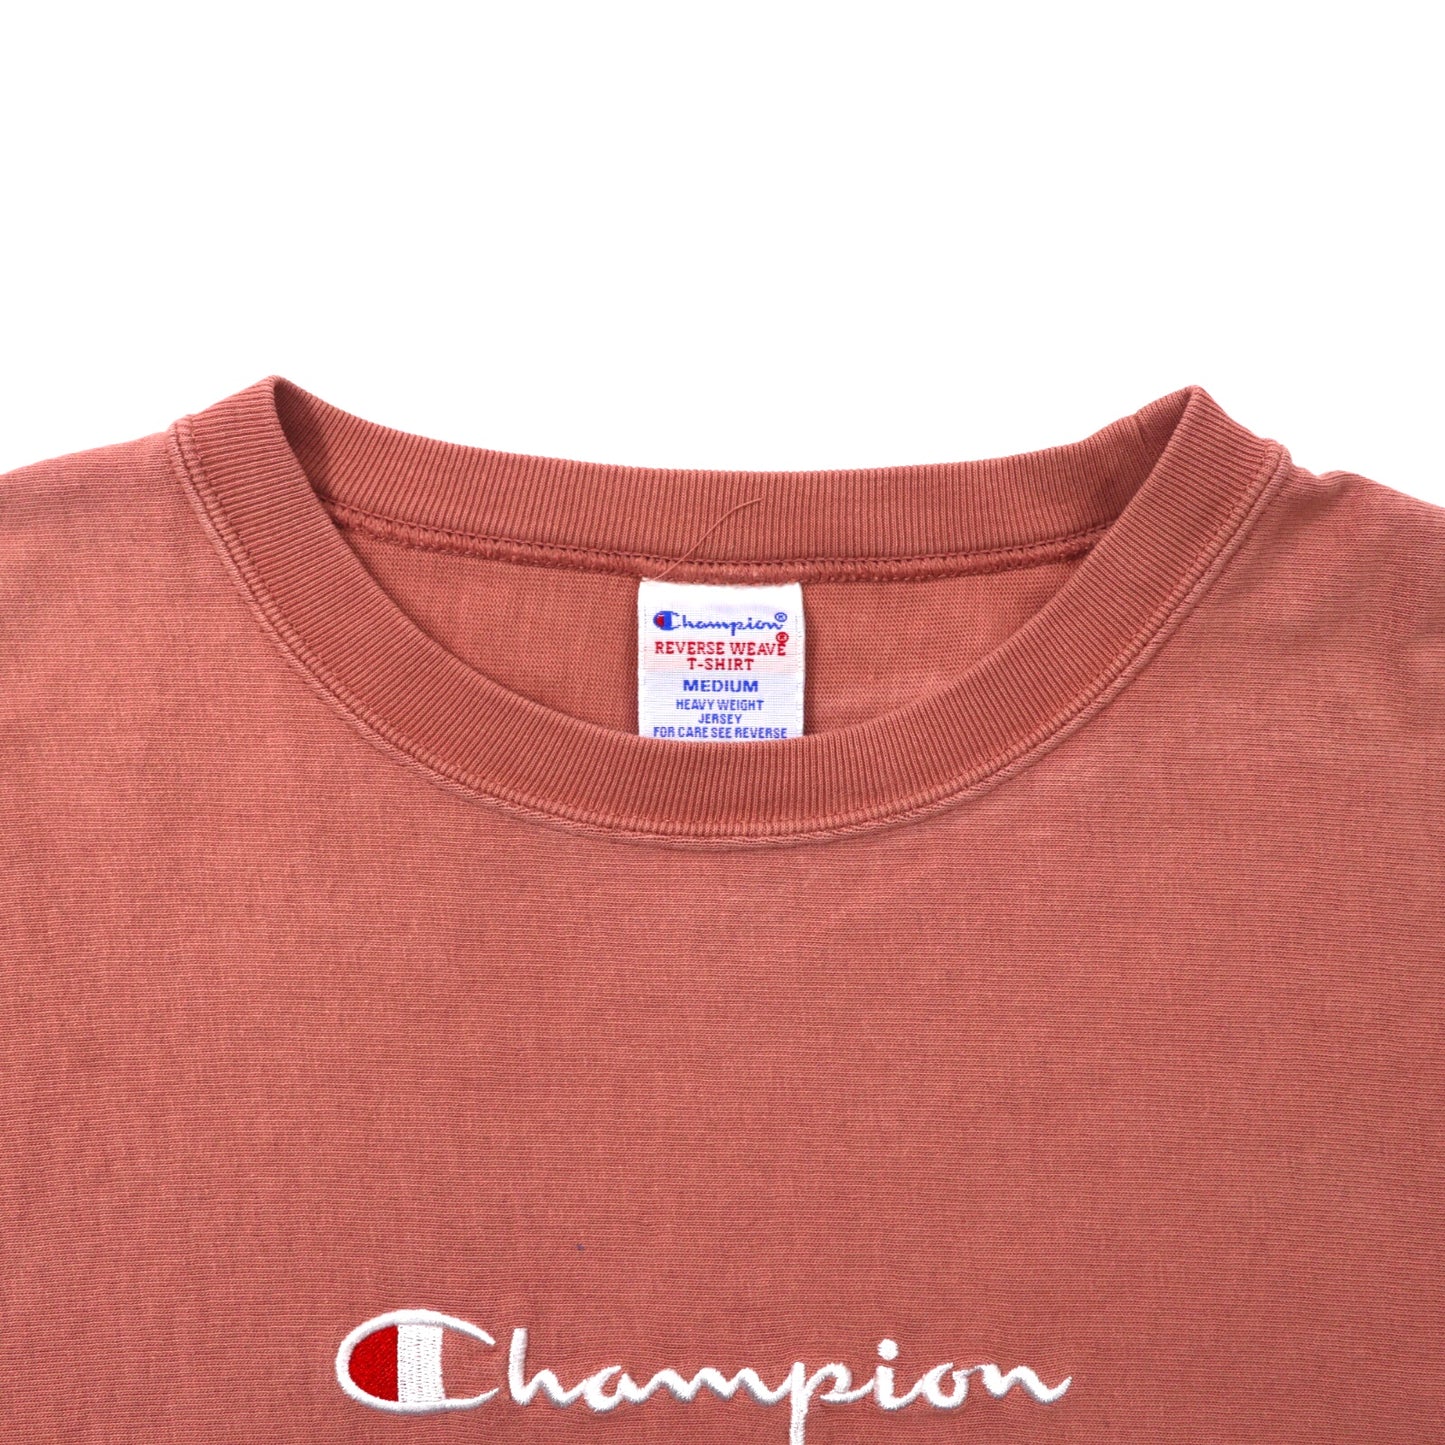 Champion クルーネックスウェット M ピンク コットン REVERSE WEAVE スクリプトロゴ刺繍